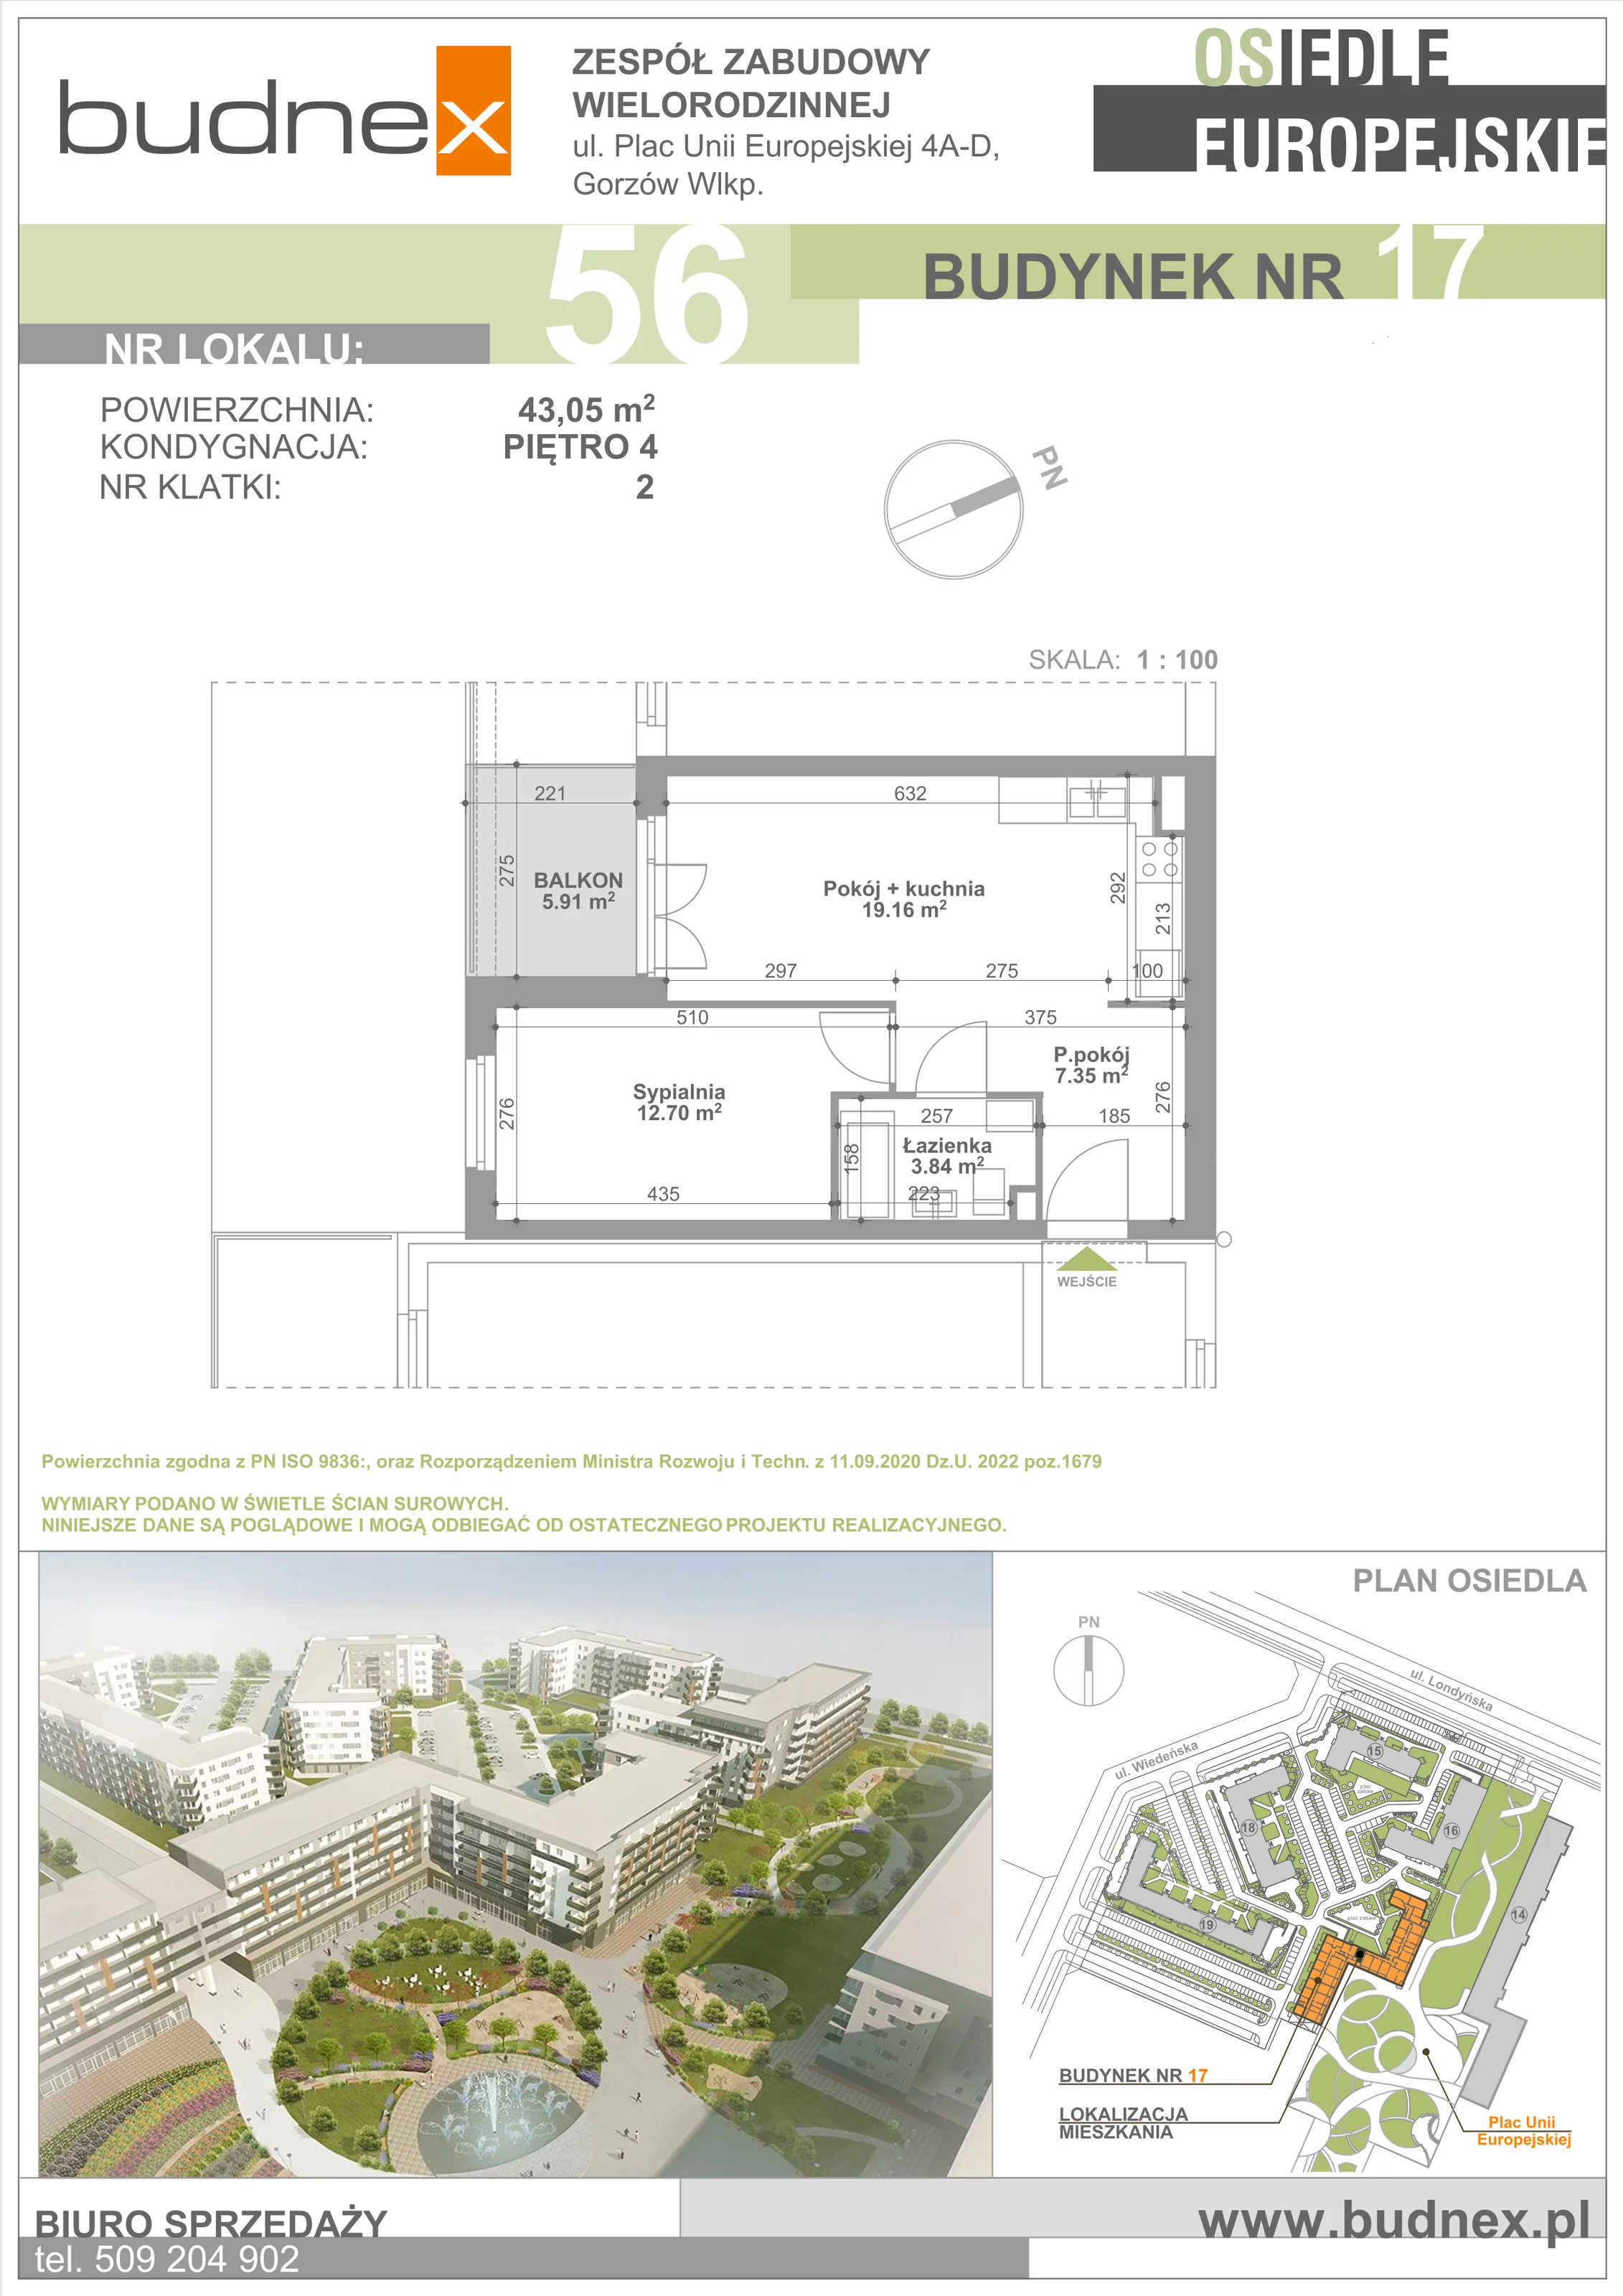 Mieszkanie 43,05 m², piętro 4, oferta nr 2/M56, Osiedle Europejskie - Budynek 17, Gorzów Wielkopolski, Plac Unii Europejskiej 4A-D